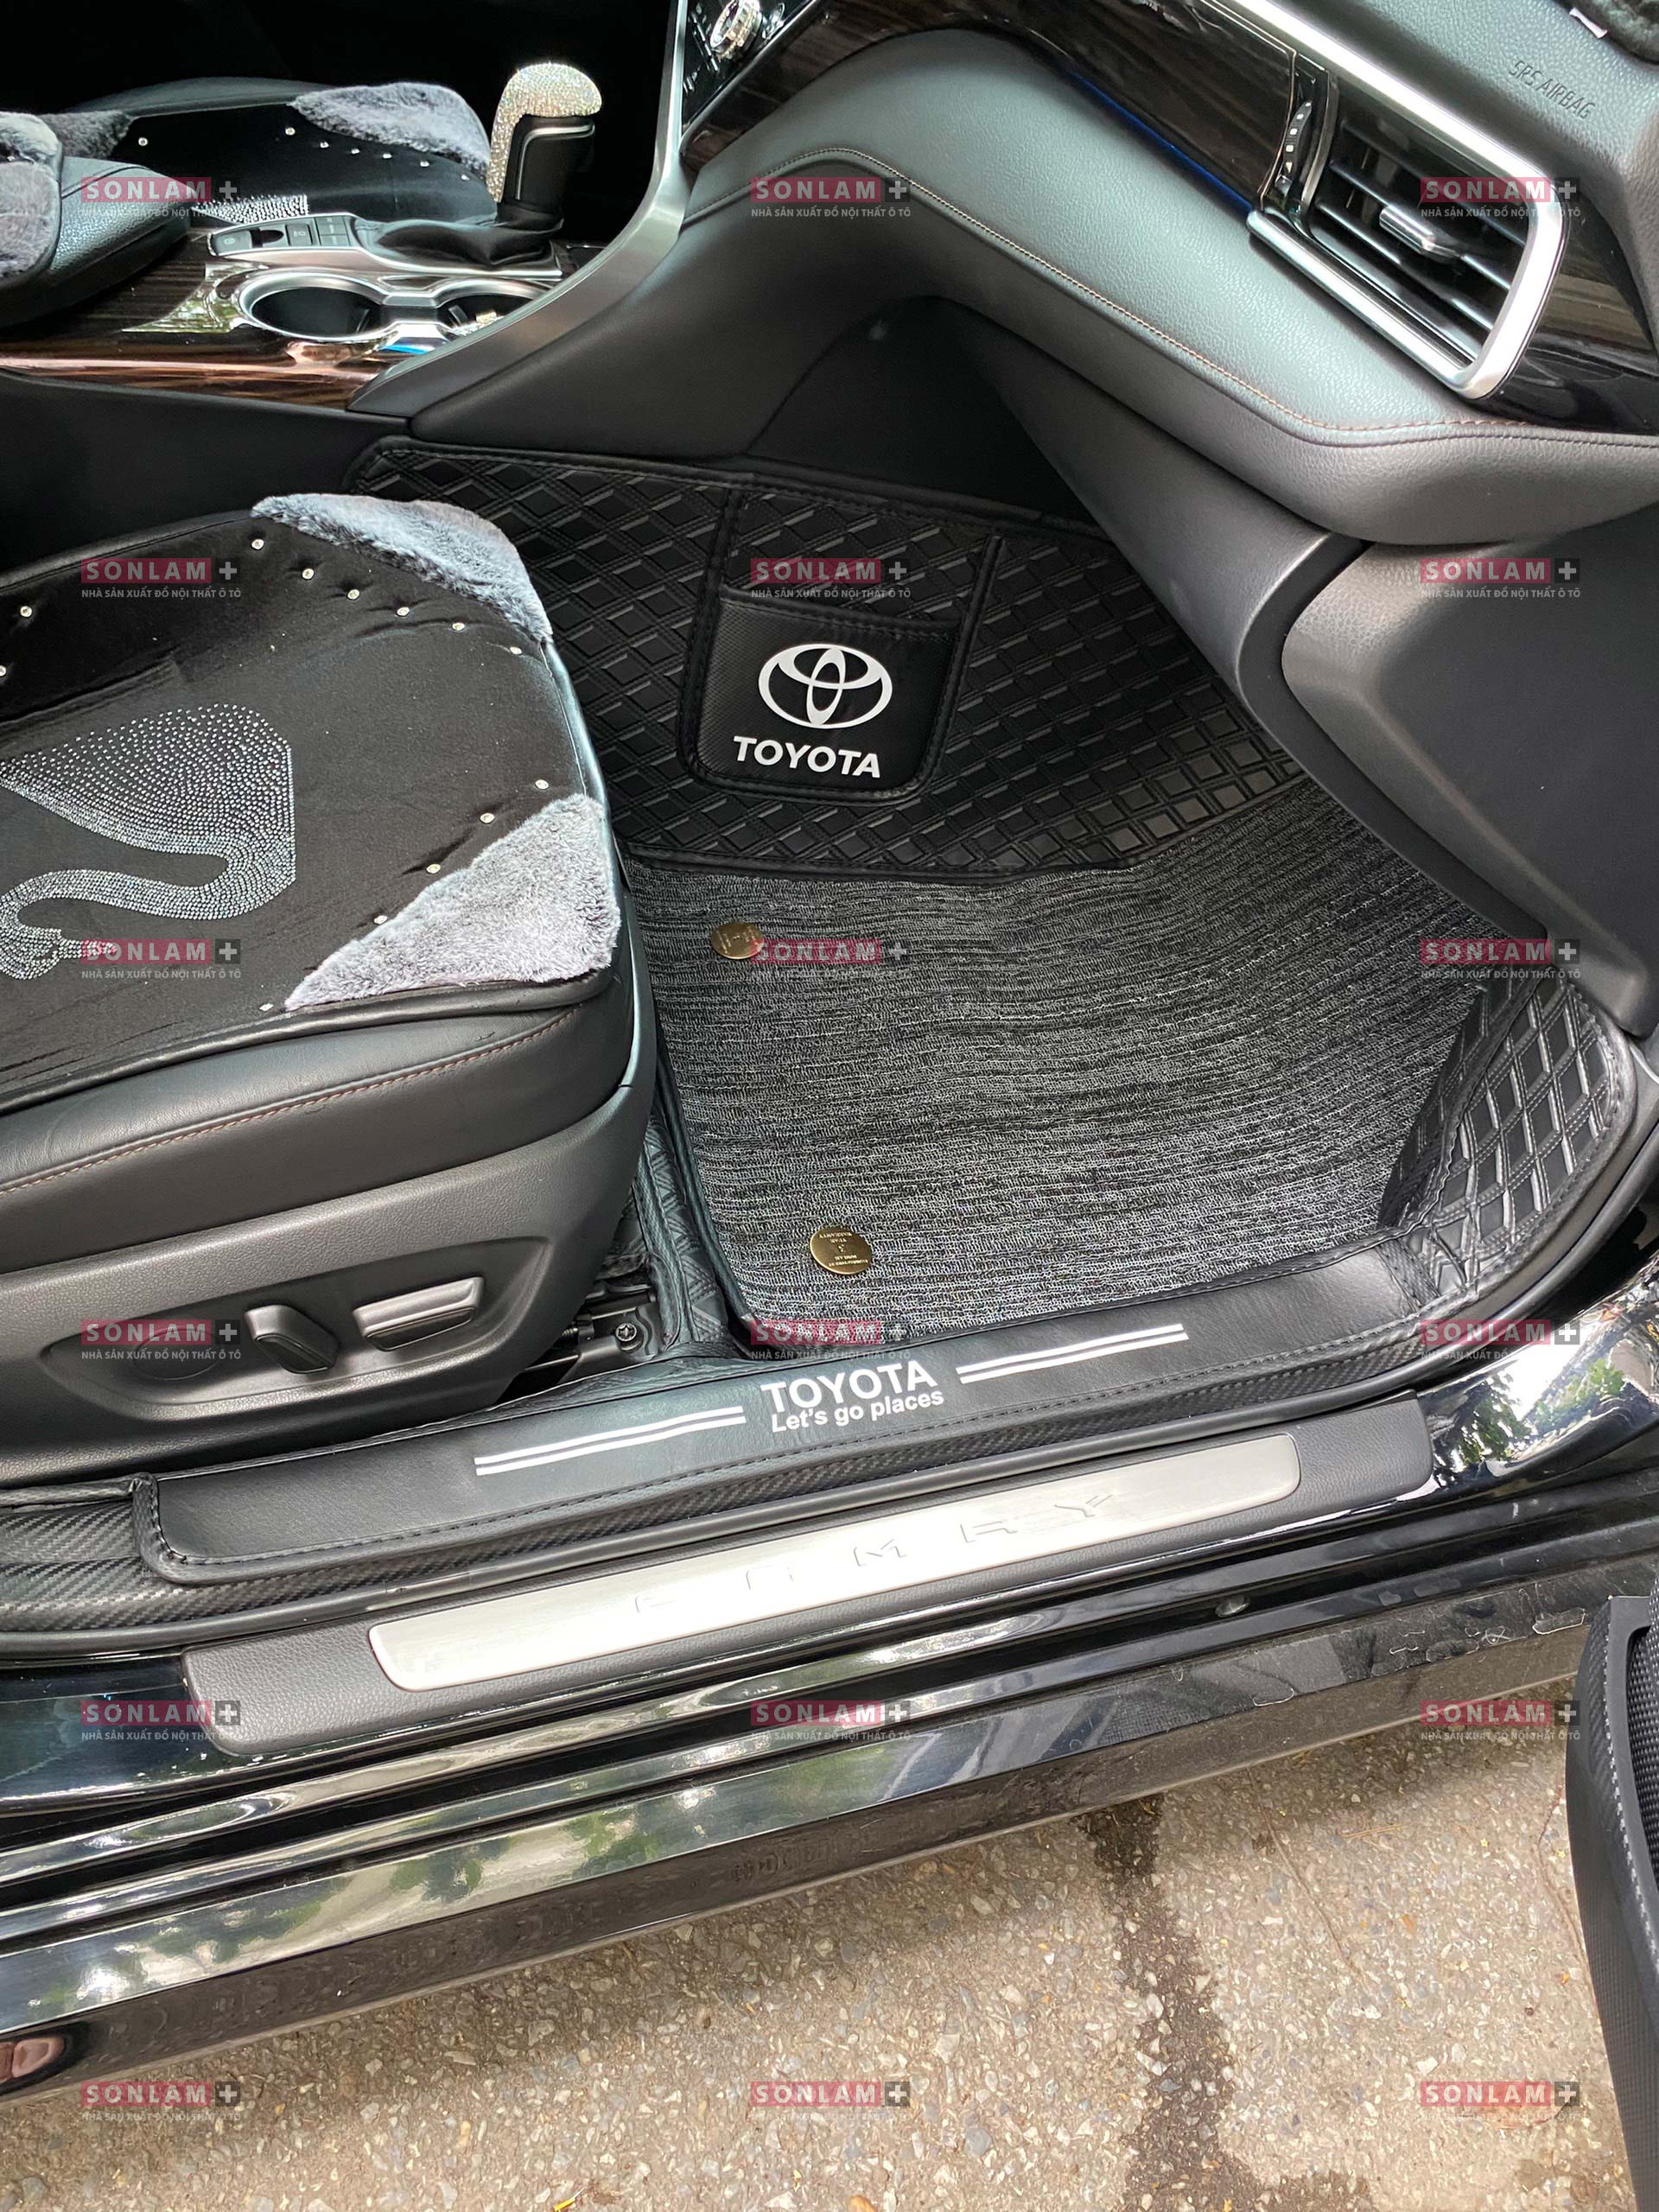 Thảm lót sàn ô tô Toyota Camry 2019-2023